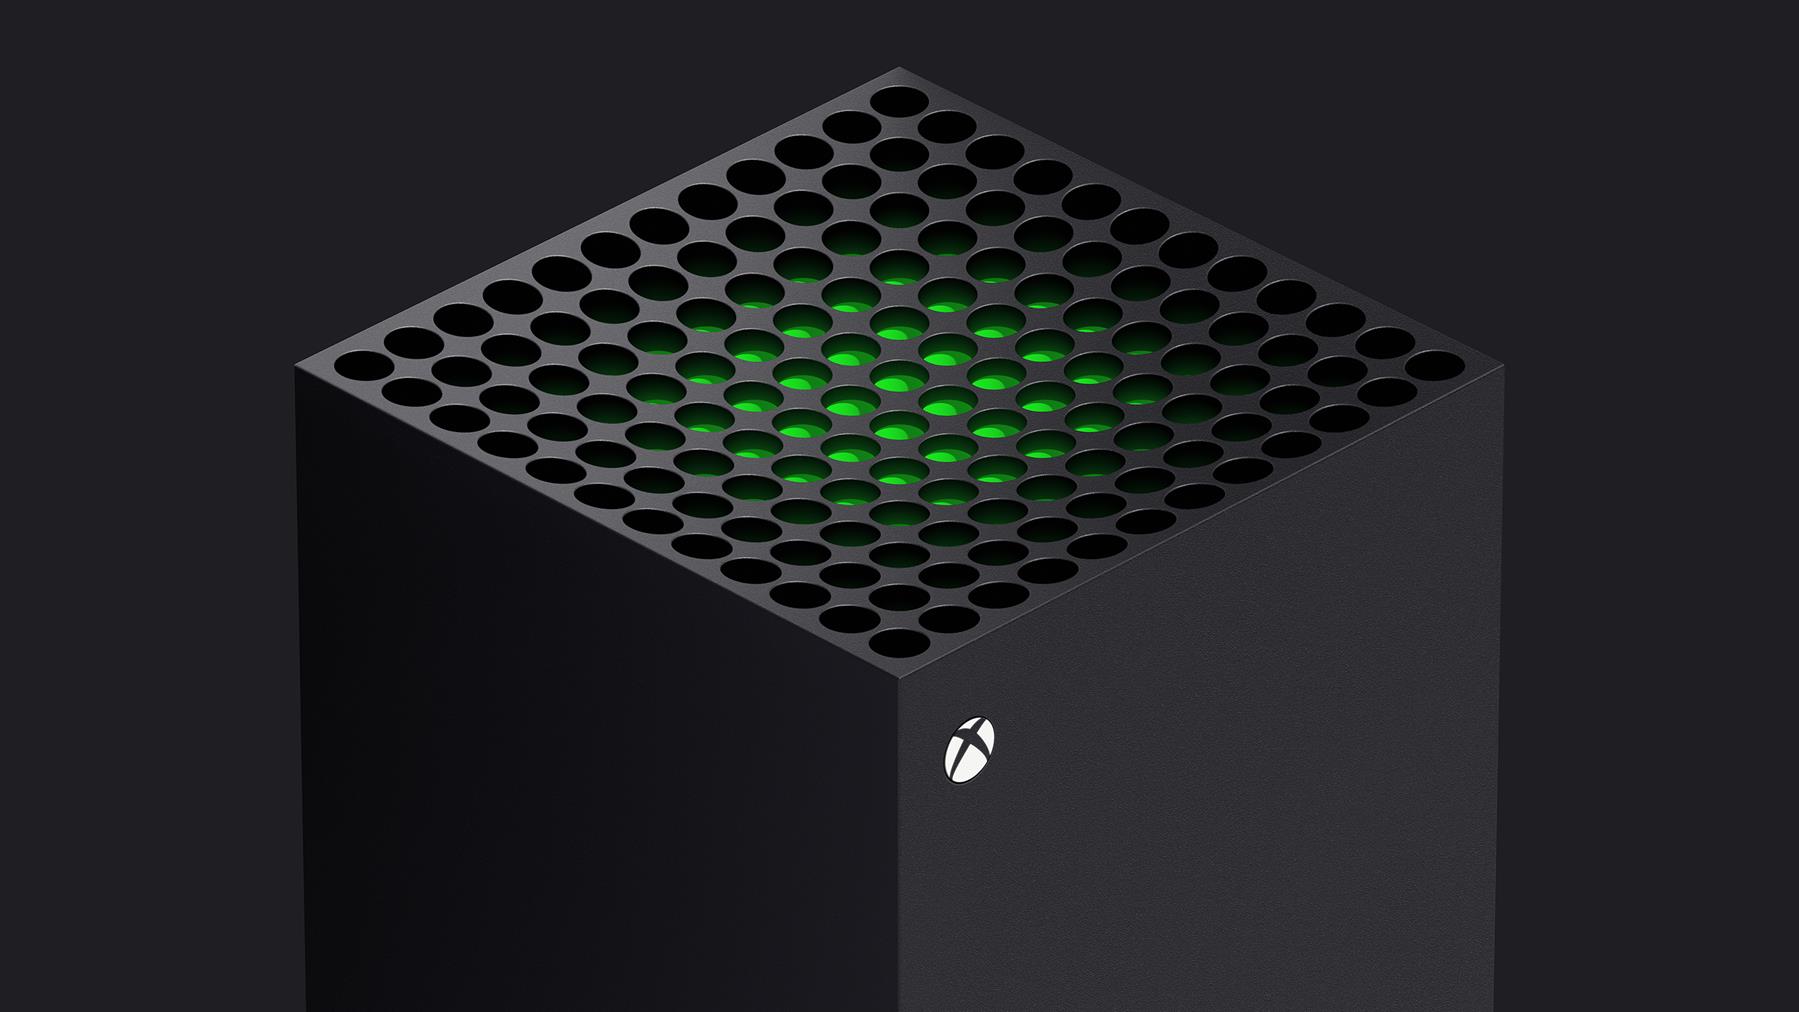 A diferencia de PS5, Xbox Series X admitirá "todos" los juegos de Xbox One, dice Microsoft